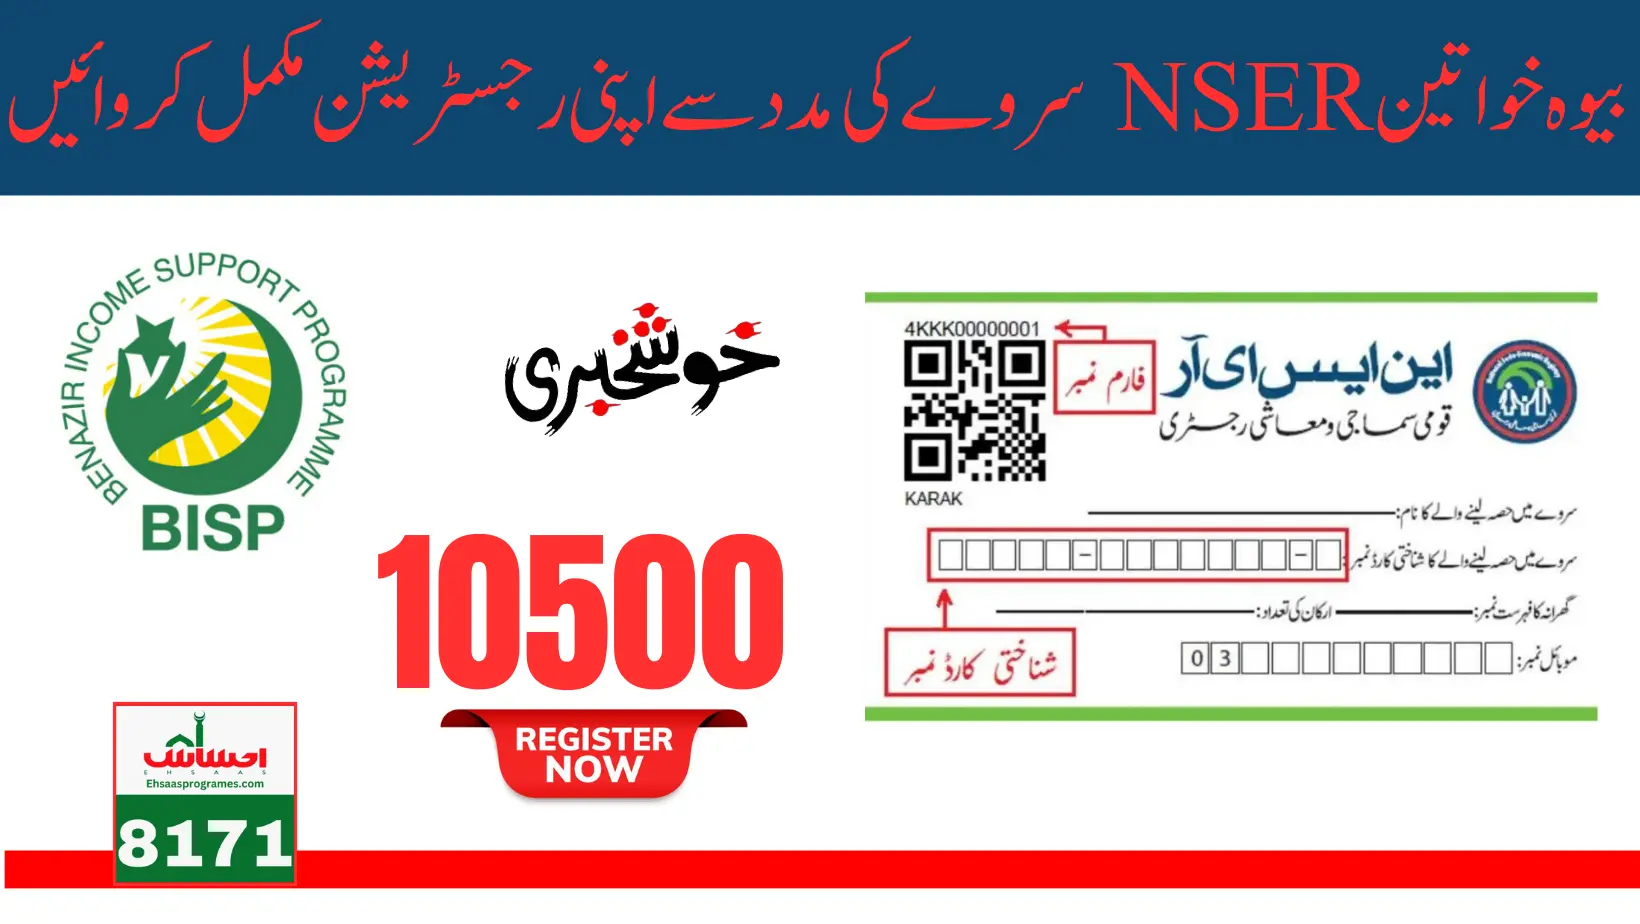 Benazir Widow Program New Registration By NADRA And NSER Dynamic Servey